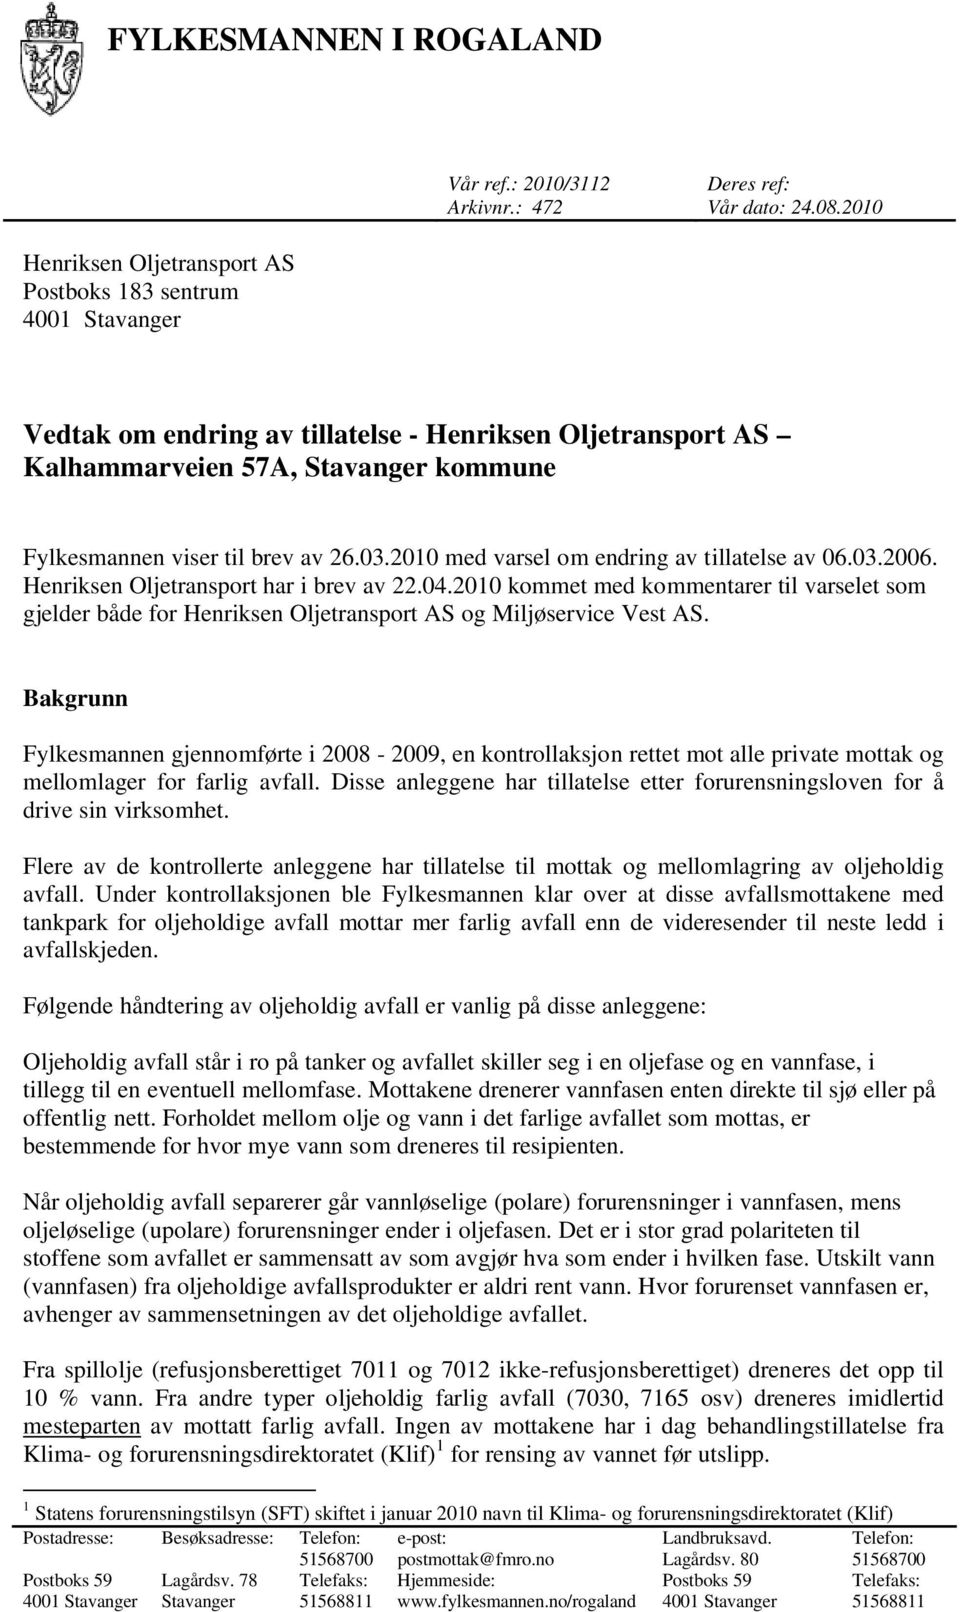 Henriksen Oljetransport har i brev av 22.04.2010 kommet med kommentarer til varselet som gjelder både for Henriksen Oljetransport AS og Miljøservice Vest AS.